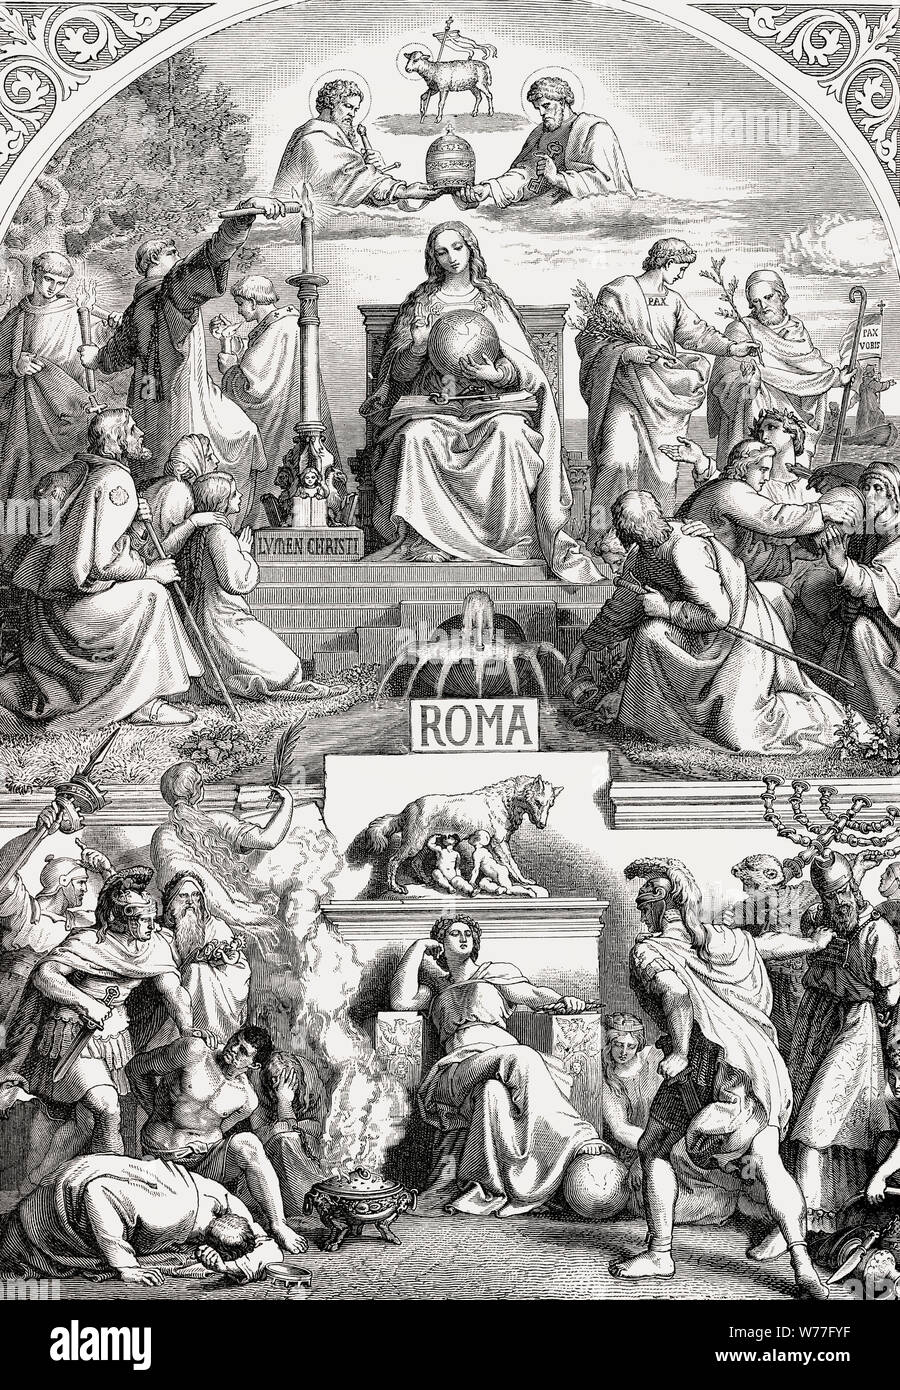 Allégorie de la vie chrétienne et païenne dans la Rome Ancienne Banque D'Images